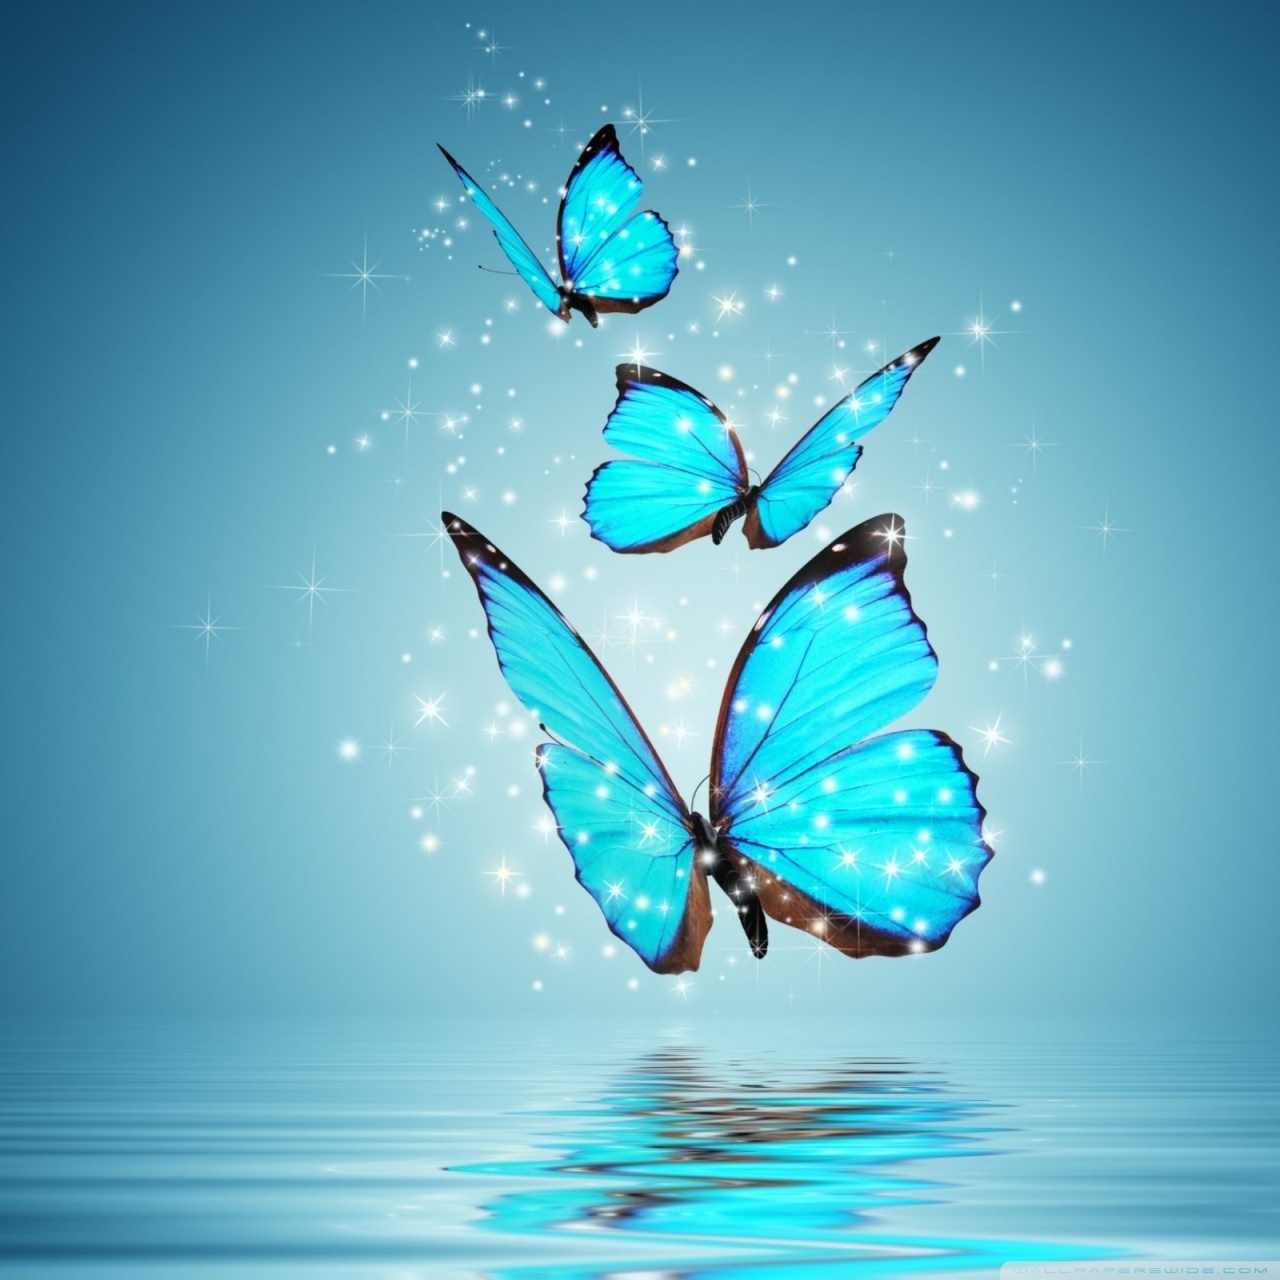 molto bello lo sfondo hd,blu,la farfalla,insetto,acqua,turchese